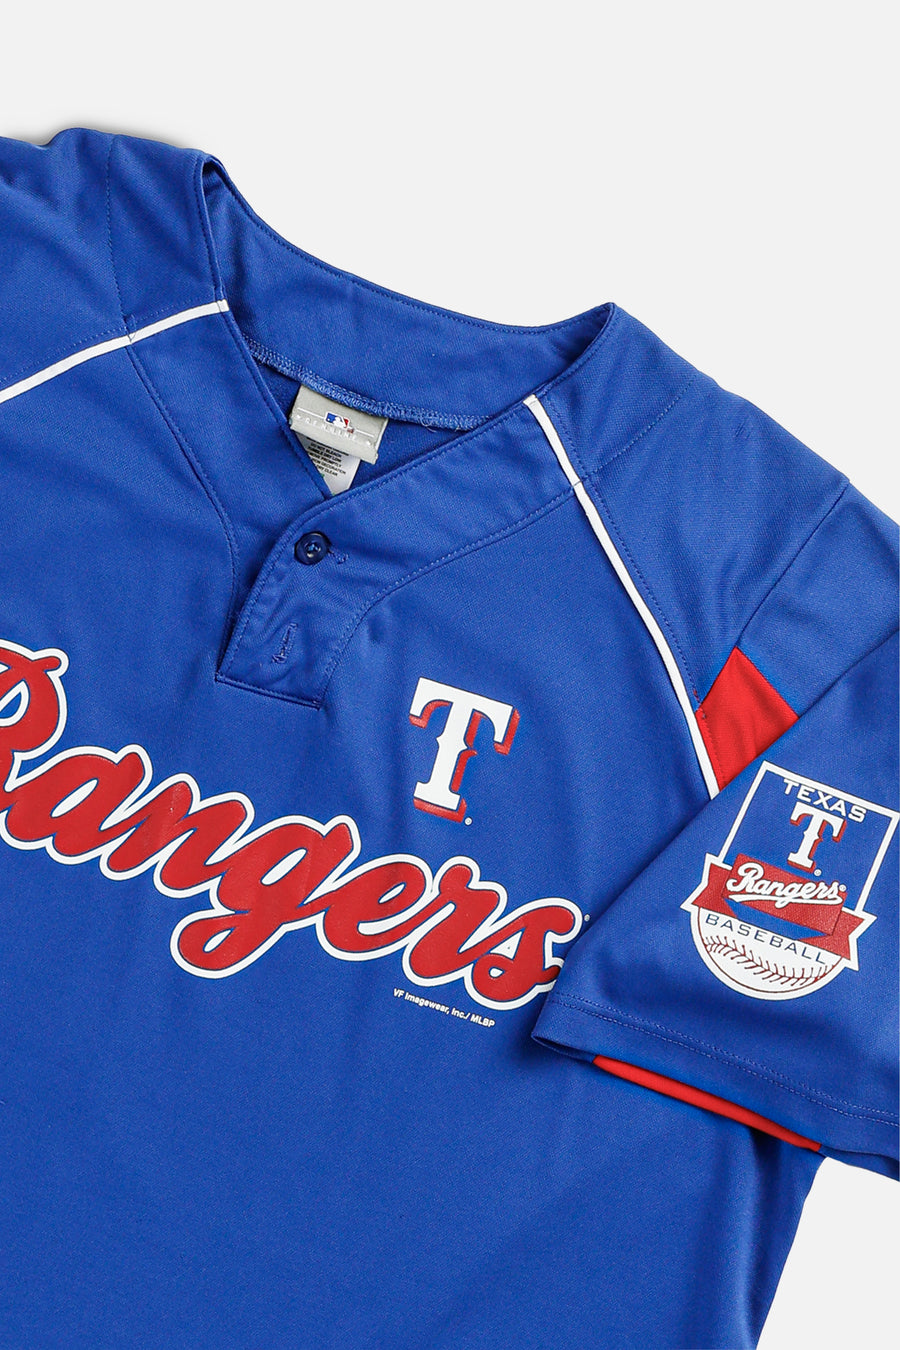 Vintage Texas Rangers MLB Jersey - XL